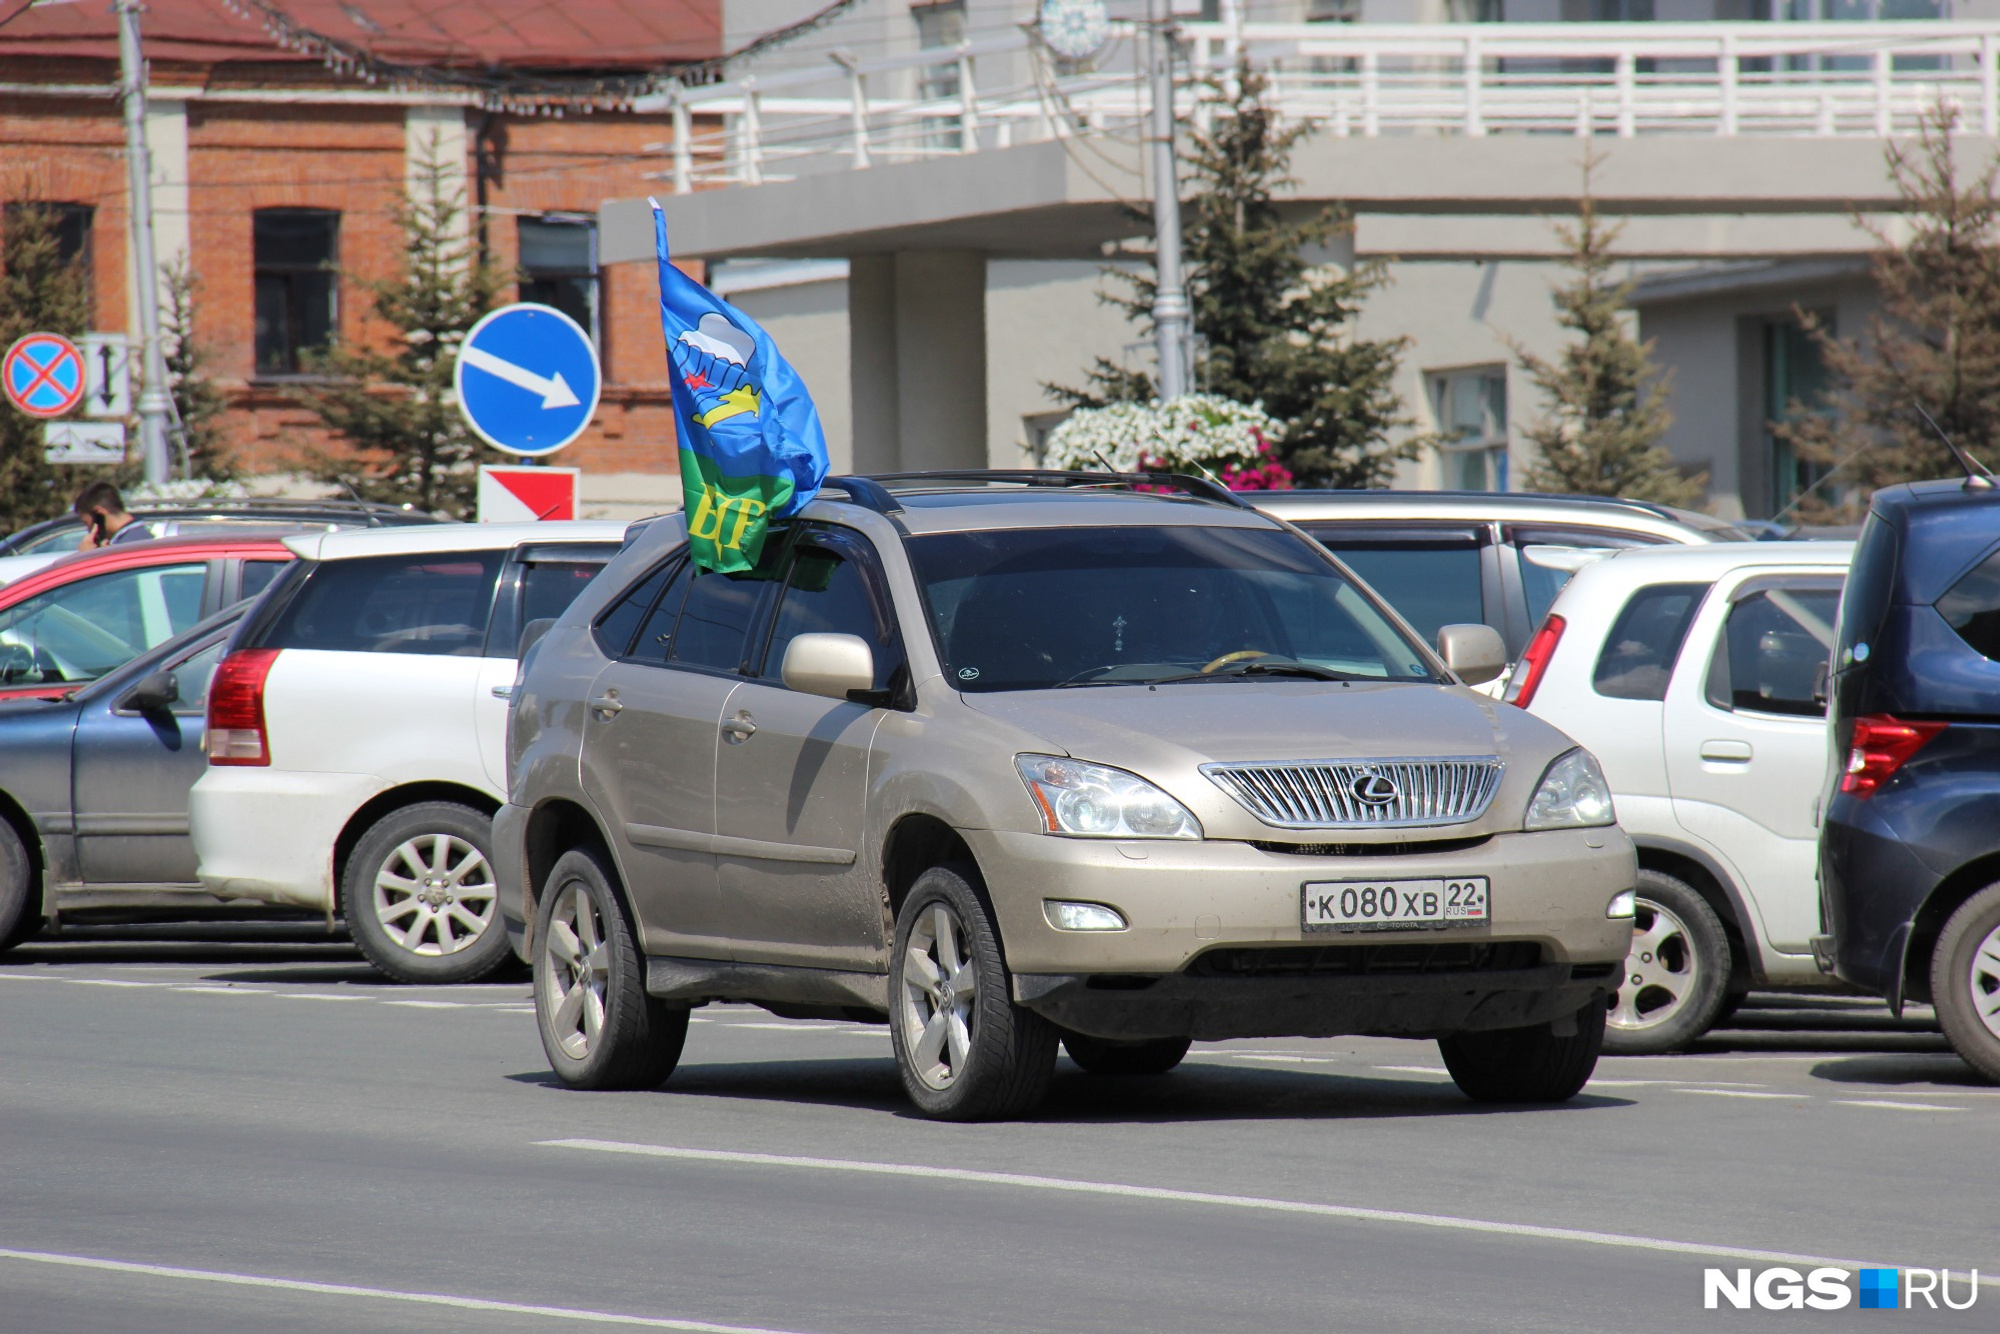 Праздничные авто с флагами под окнами областного правительства. Фото Густаво Зырянова